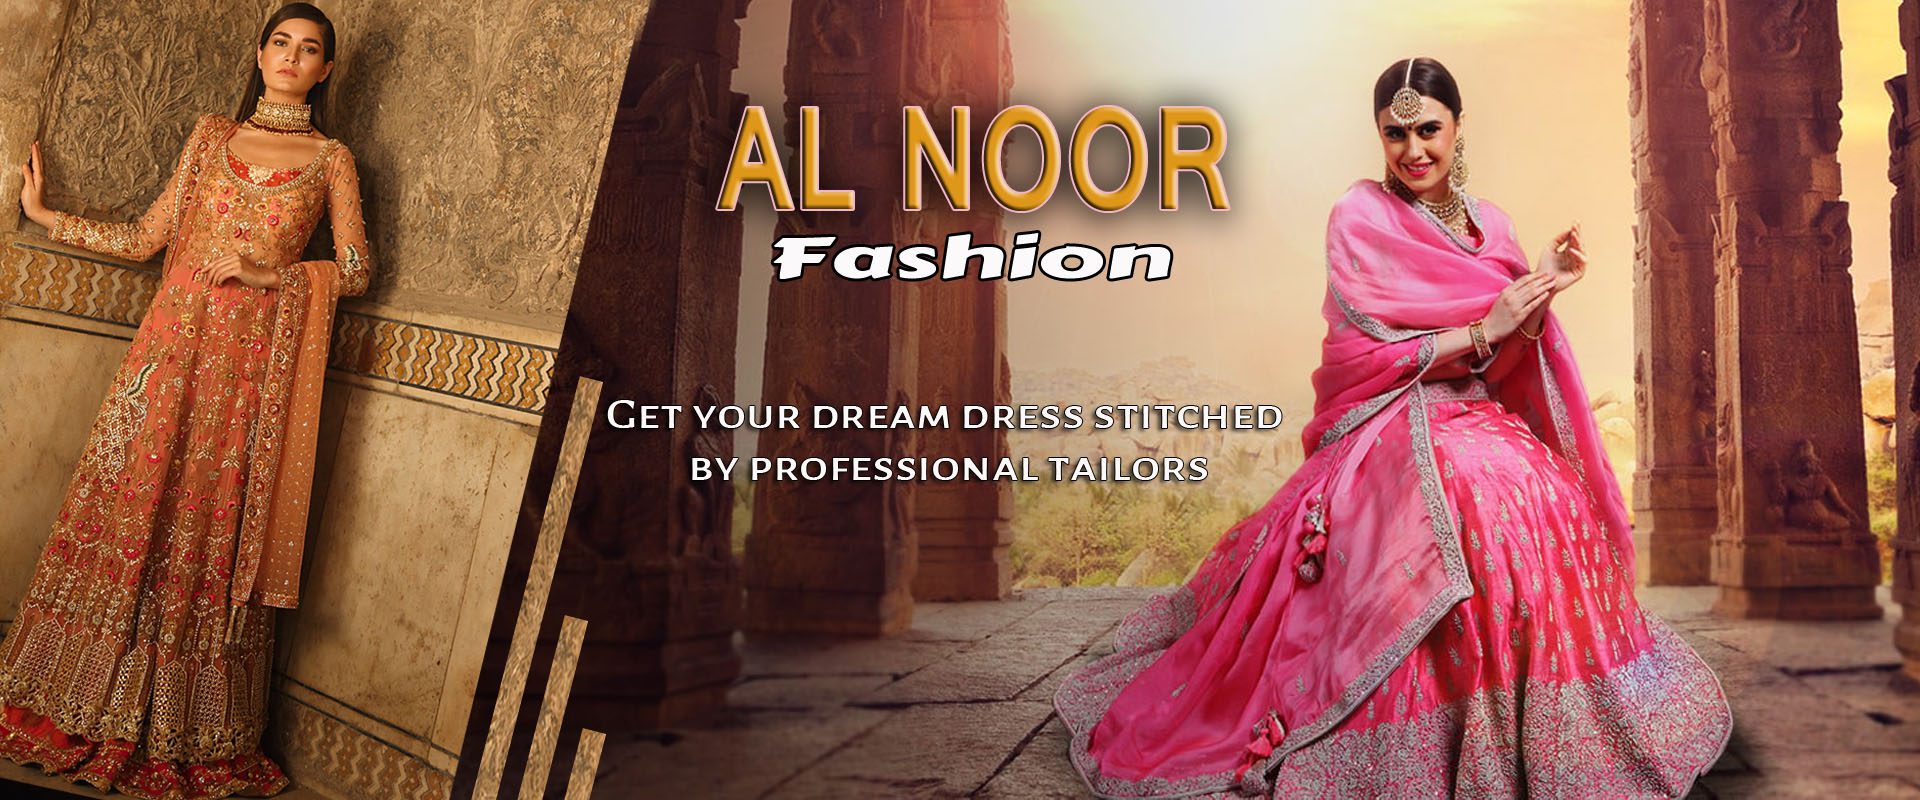 noor fashion banner 1